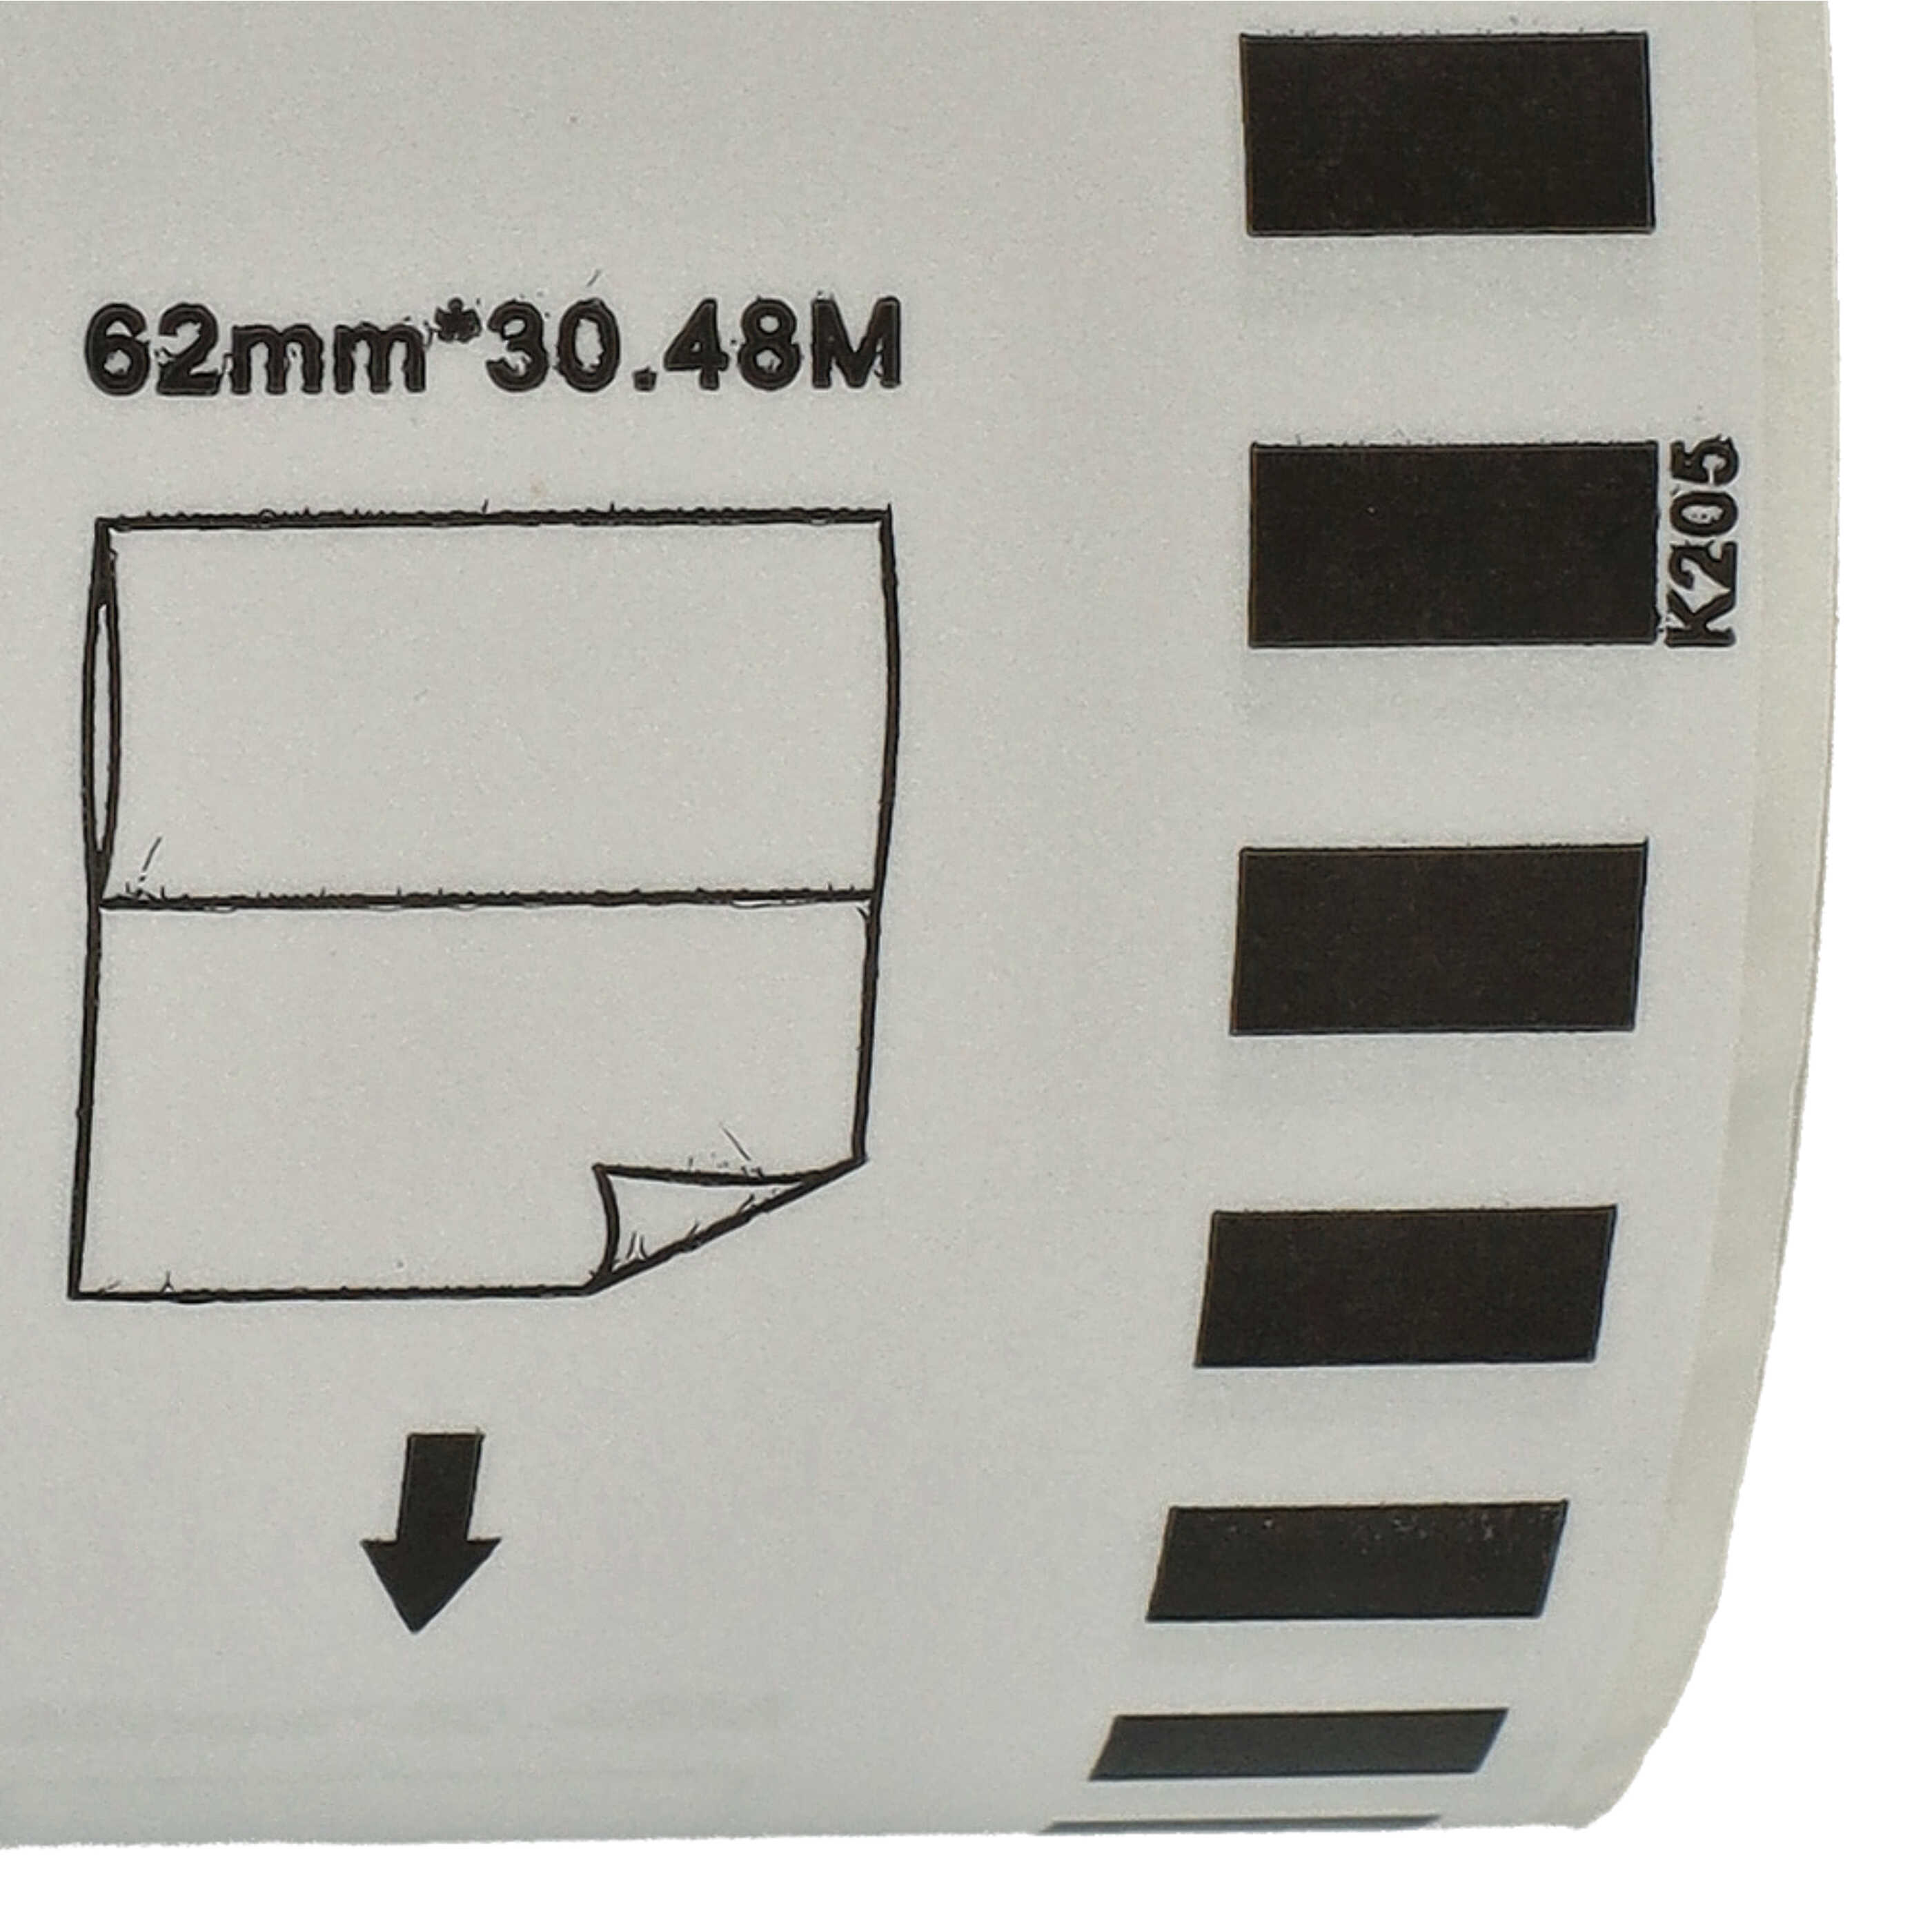 Etiketten als Ersatz für Brother DK-22205 für Etikettendrucker - Premium 62mm x 30,48m